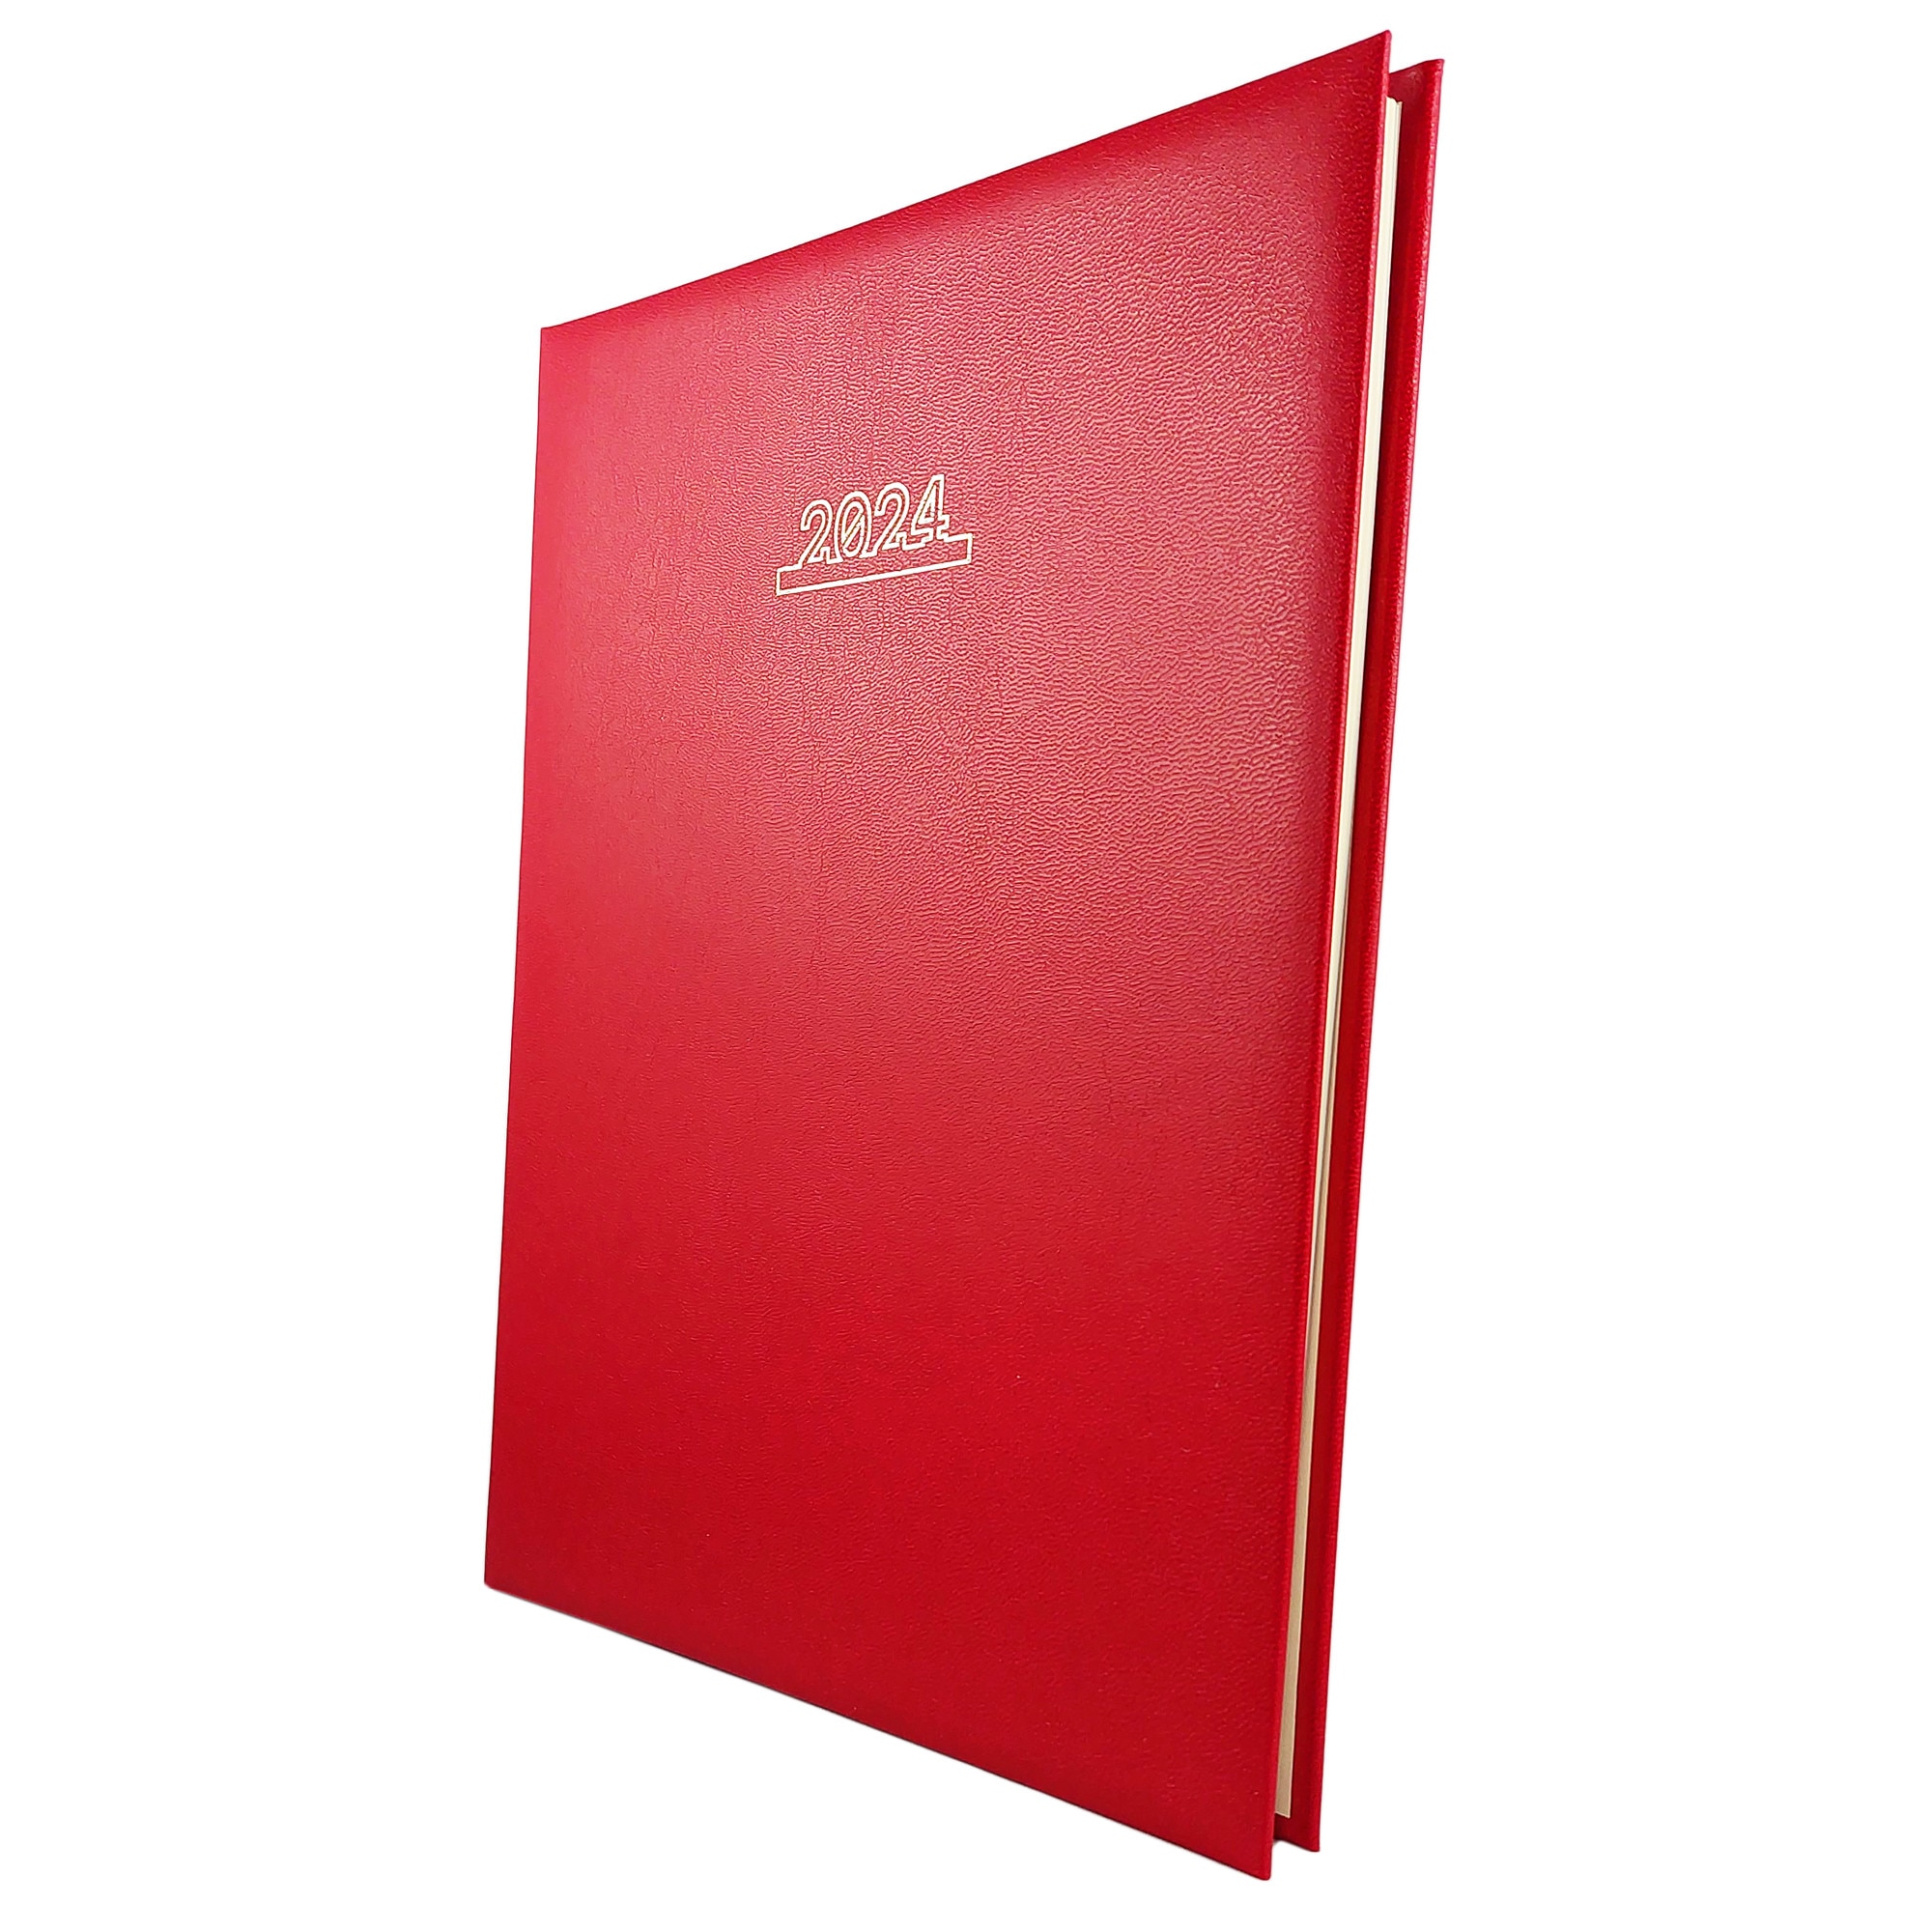 Agenda datata 2024, format A4, pentru programari, cu 152 pagini, cu coperta  buretata rosie, legare cu spira